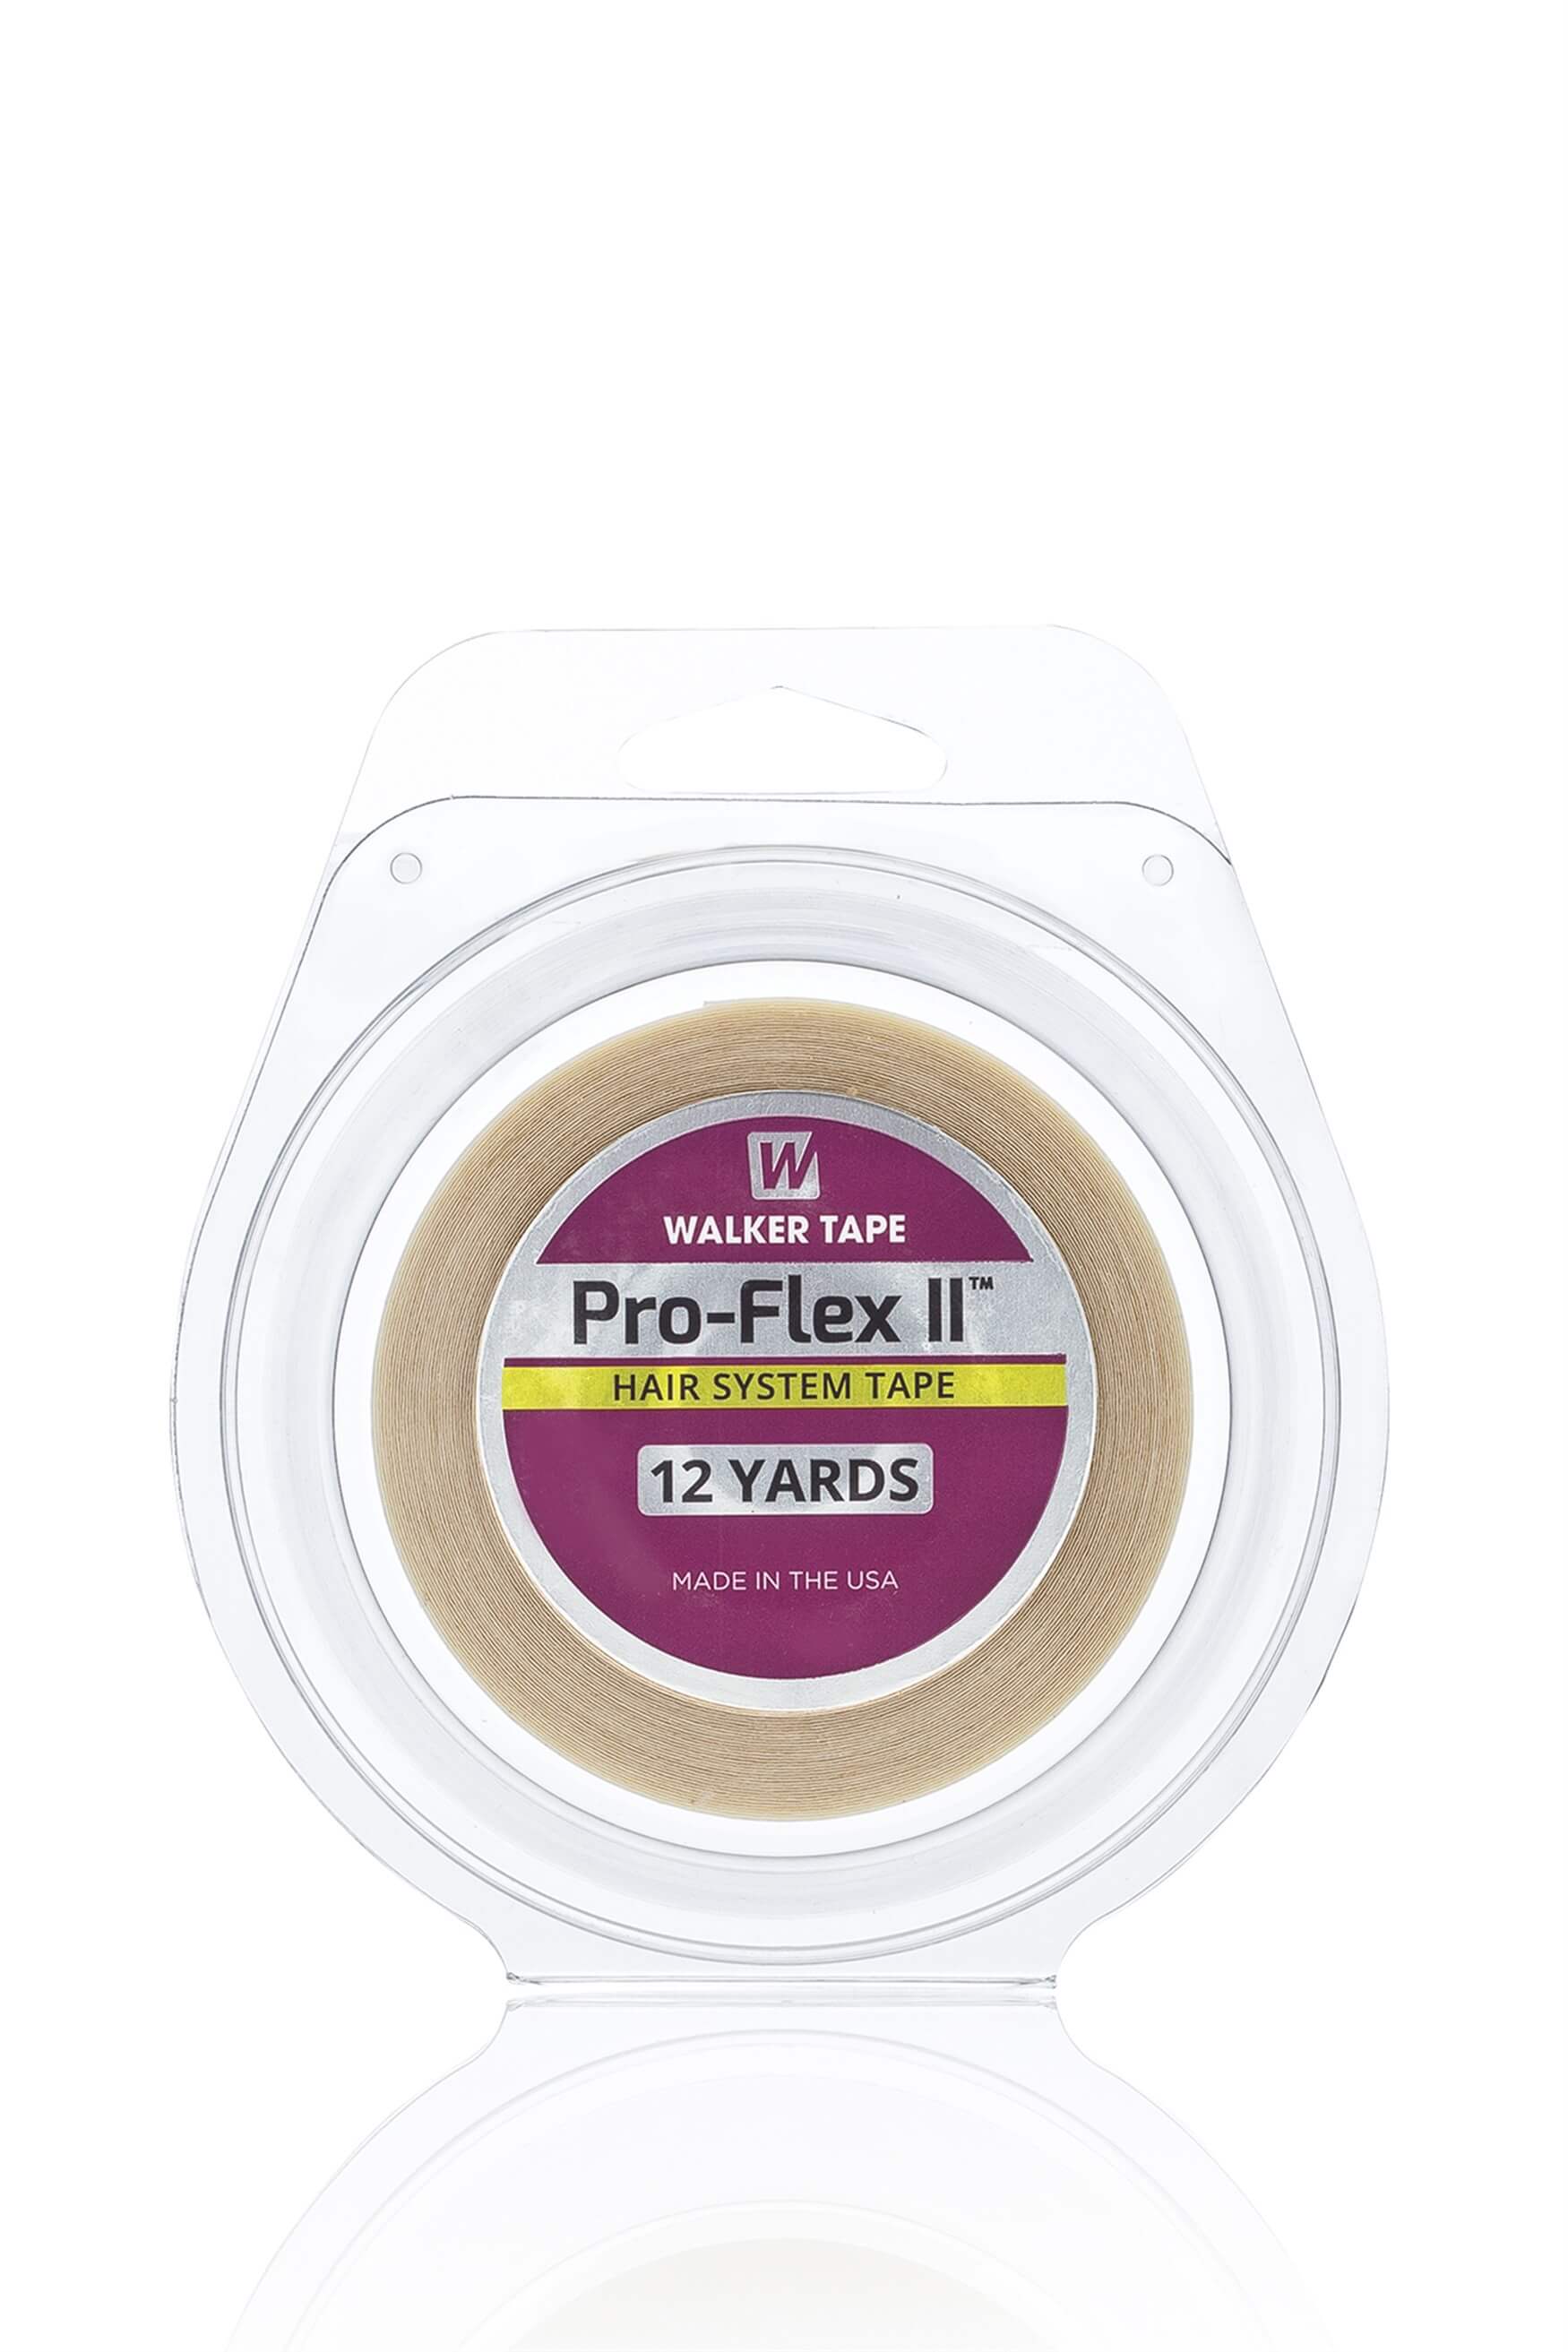 Walker Tape - Pro-Flex II™ Roll Tape - Protez Saç Bandı Rulo 12 Yds (11m)